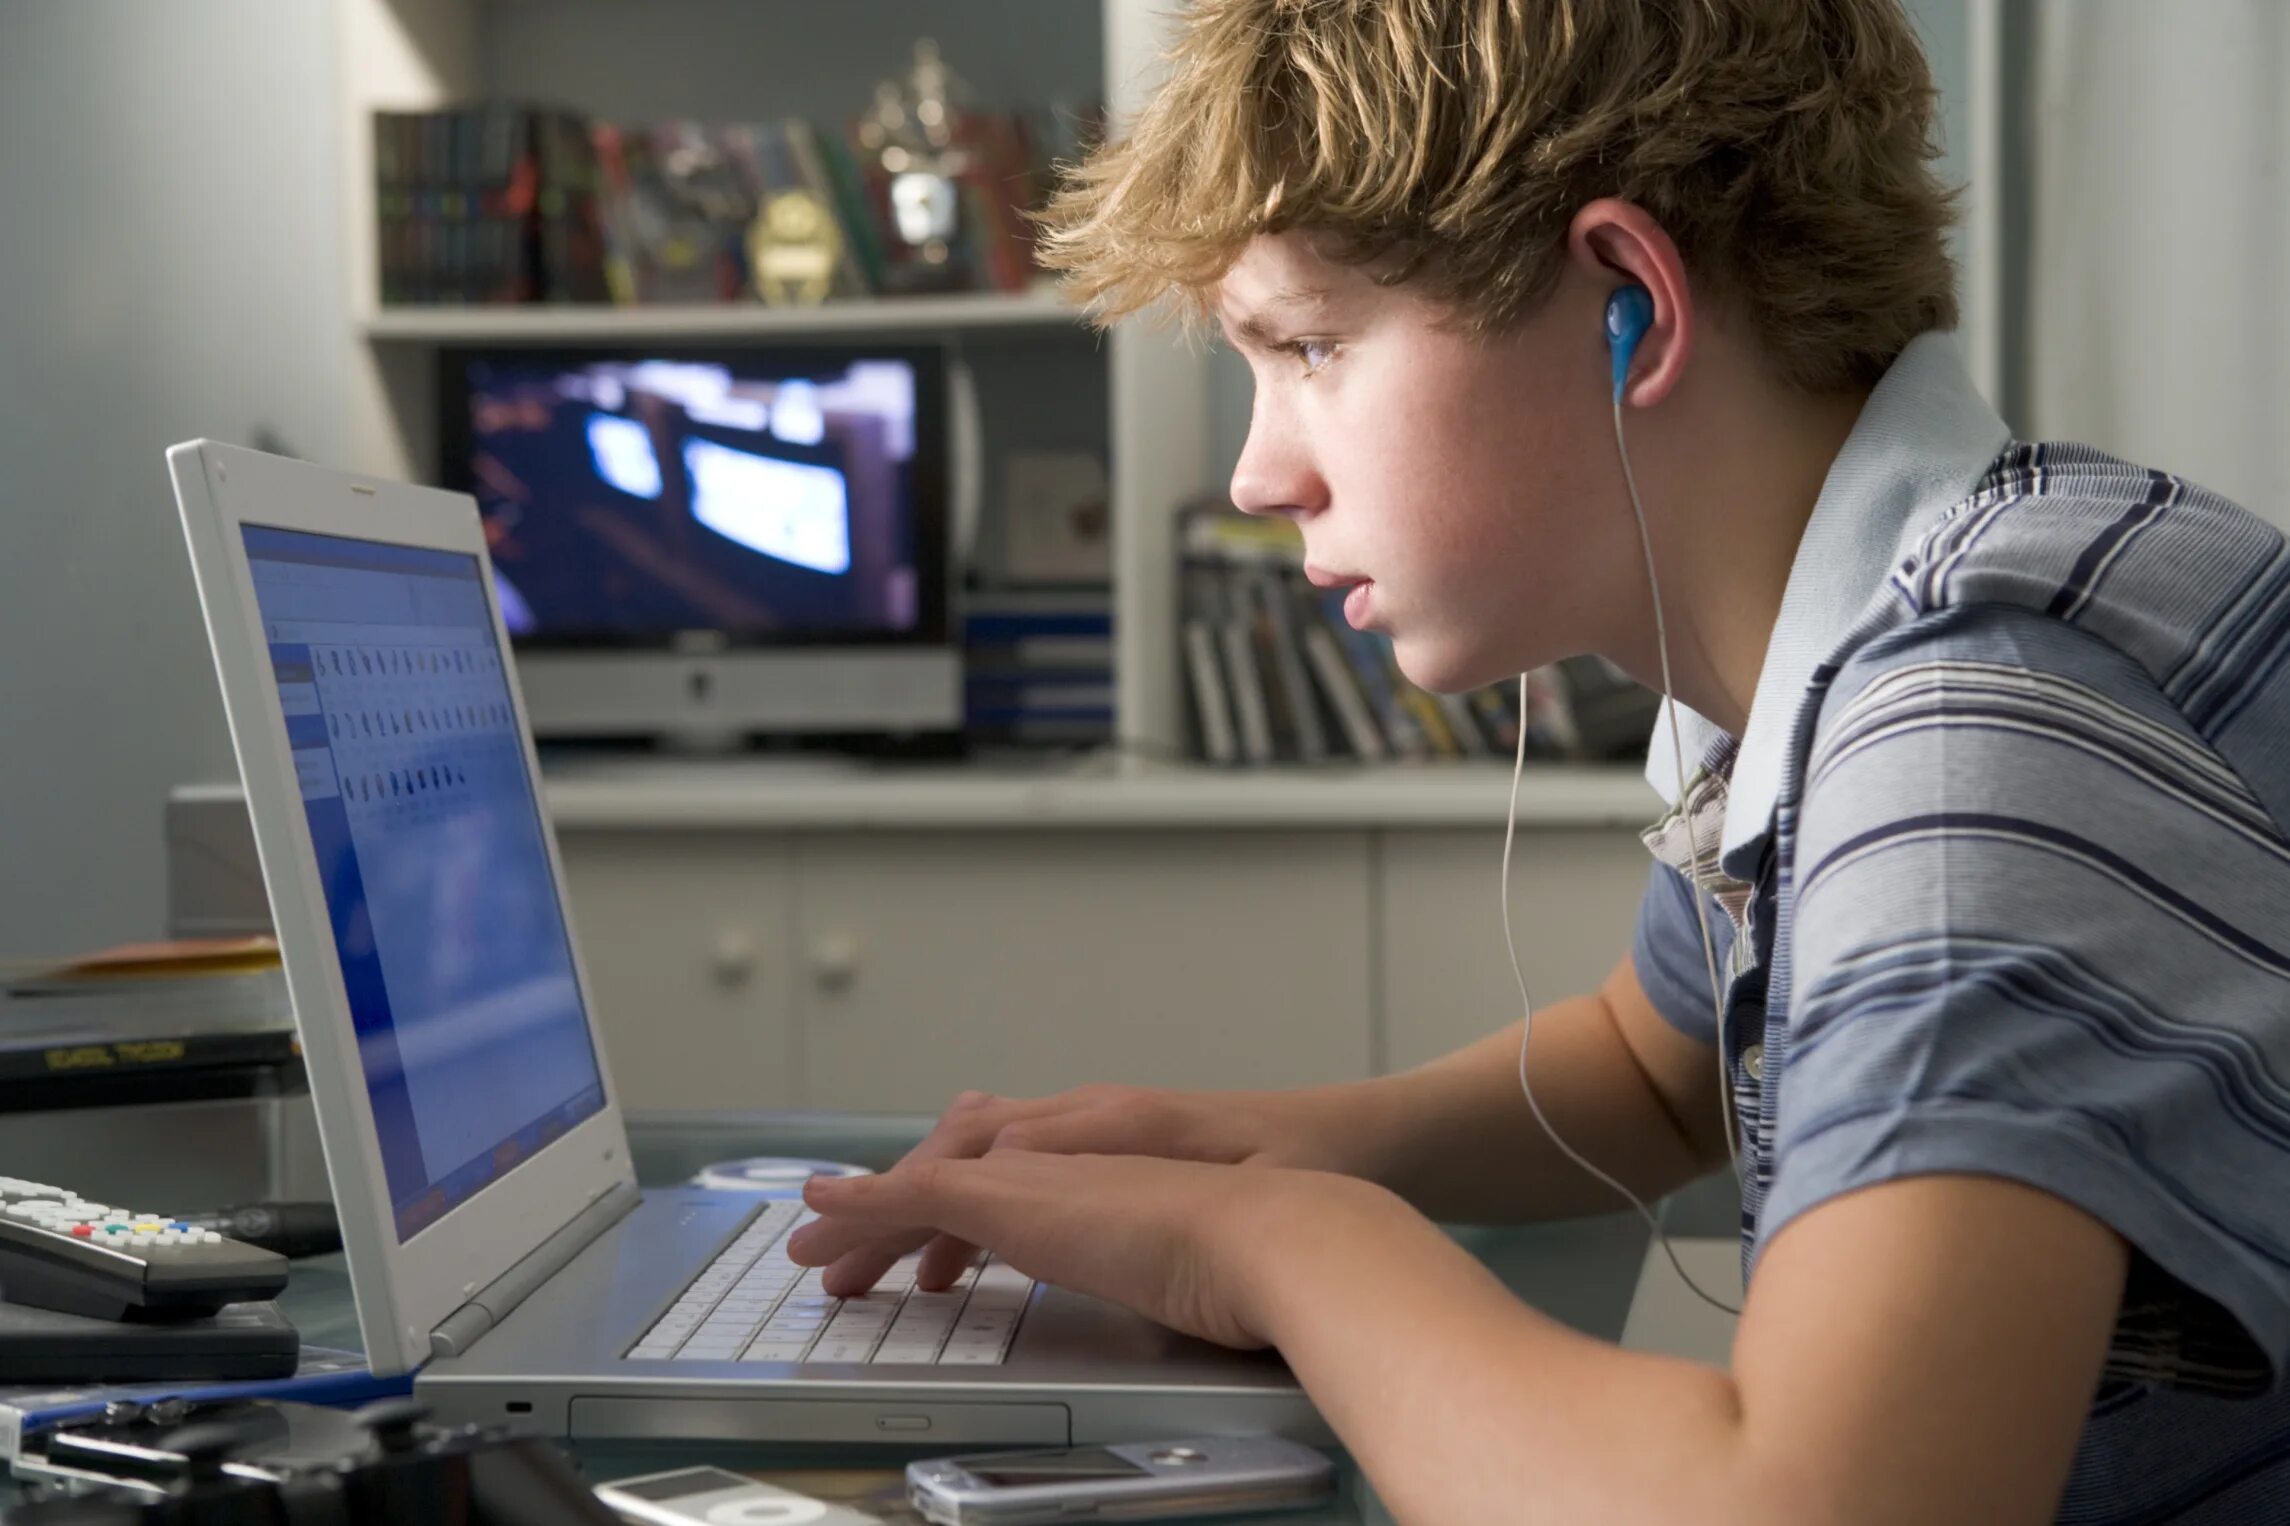 Безопасность пользователей компьютеров. Подросток за компьютером. Подросток и компьютер. Подросток играющий в компьютер. Подросток и компьютерная зависимость.